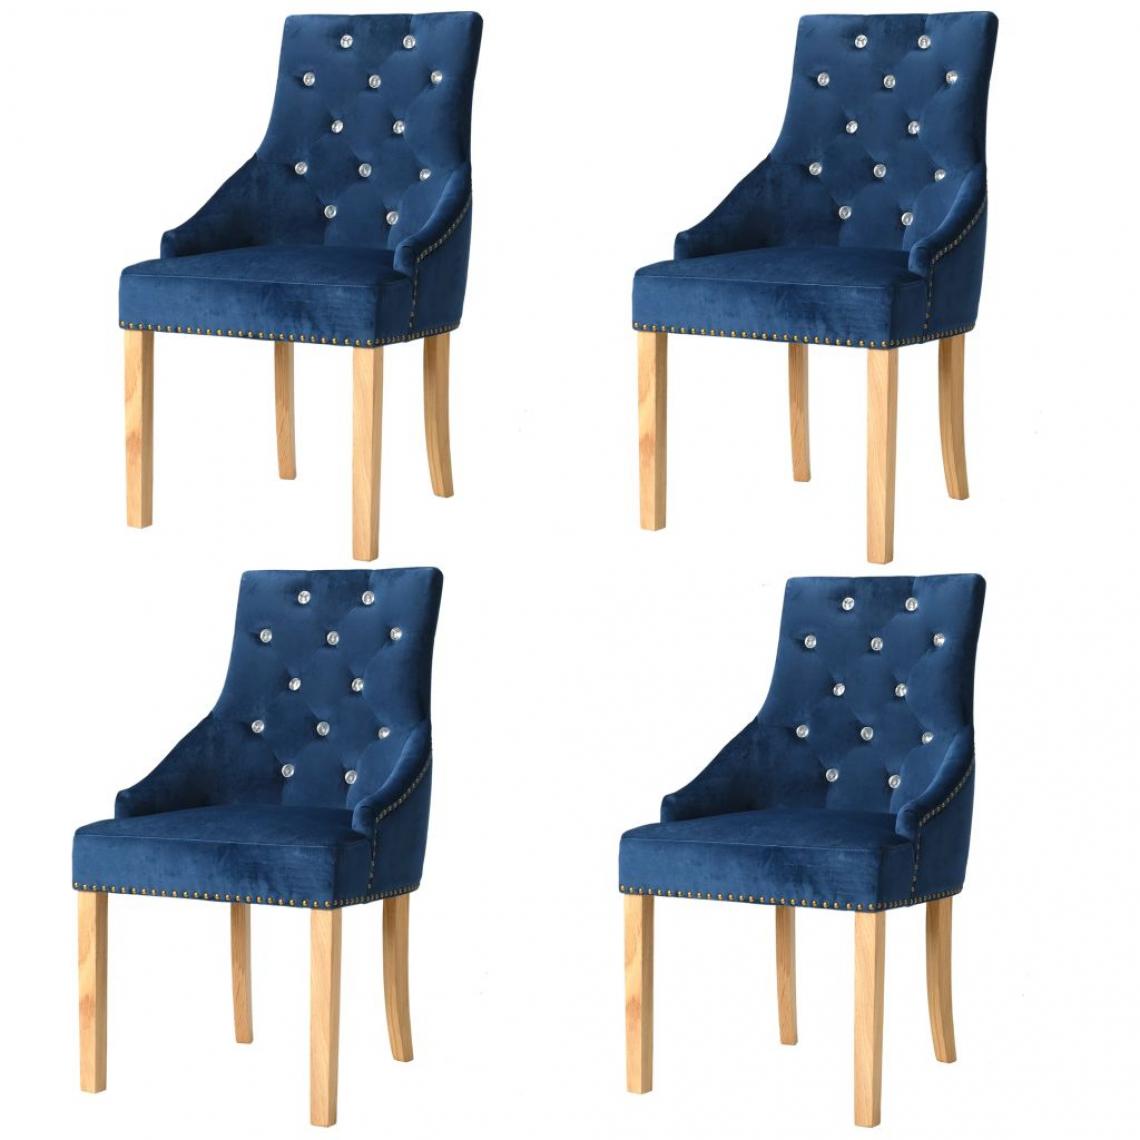 Decoshop26 - Lot de 4 chaises de salle à manger cuisine design moderne chêne massif et velours bleu CDS021269 - Chaises